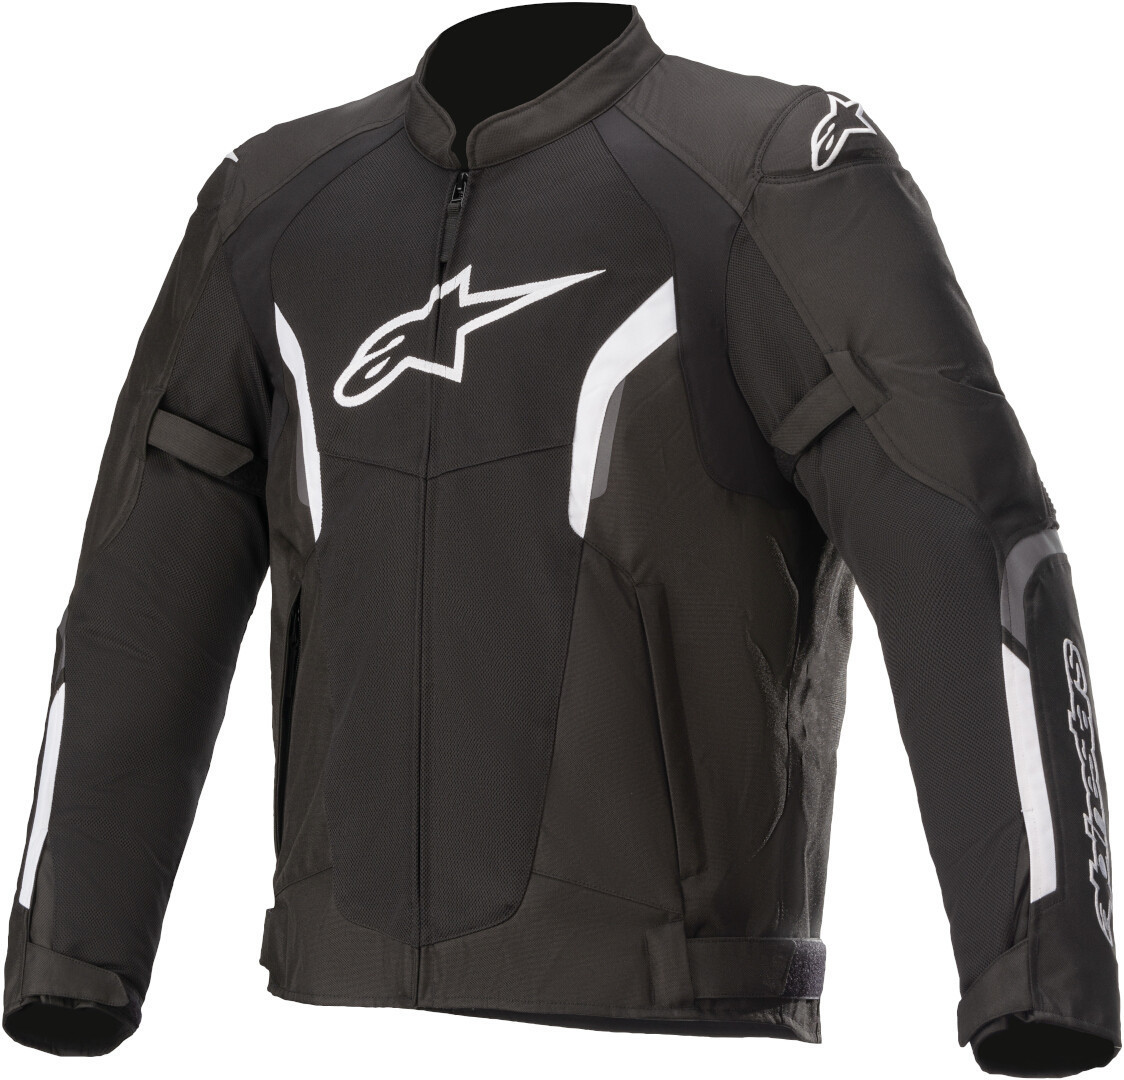 Куртка Alpinestars AST-1 V2 Air мотоциклетная текстильная, черно-белая